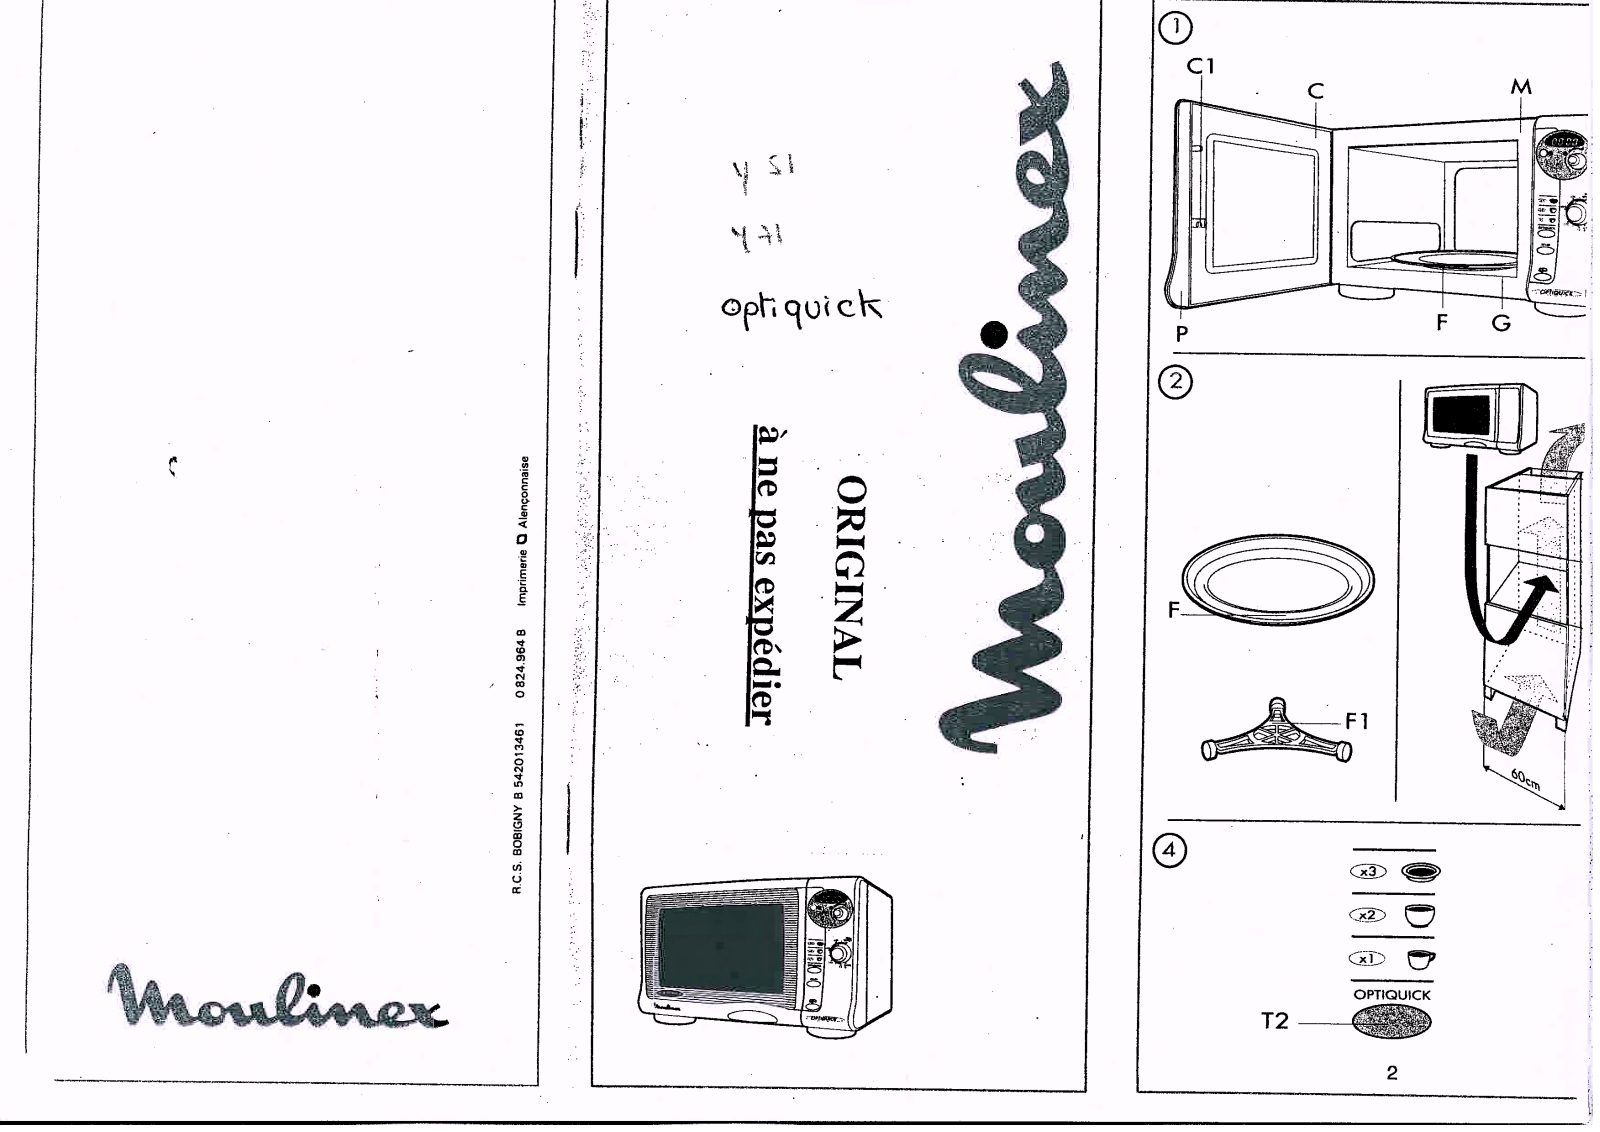 MOULINEX Y51 User Manual